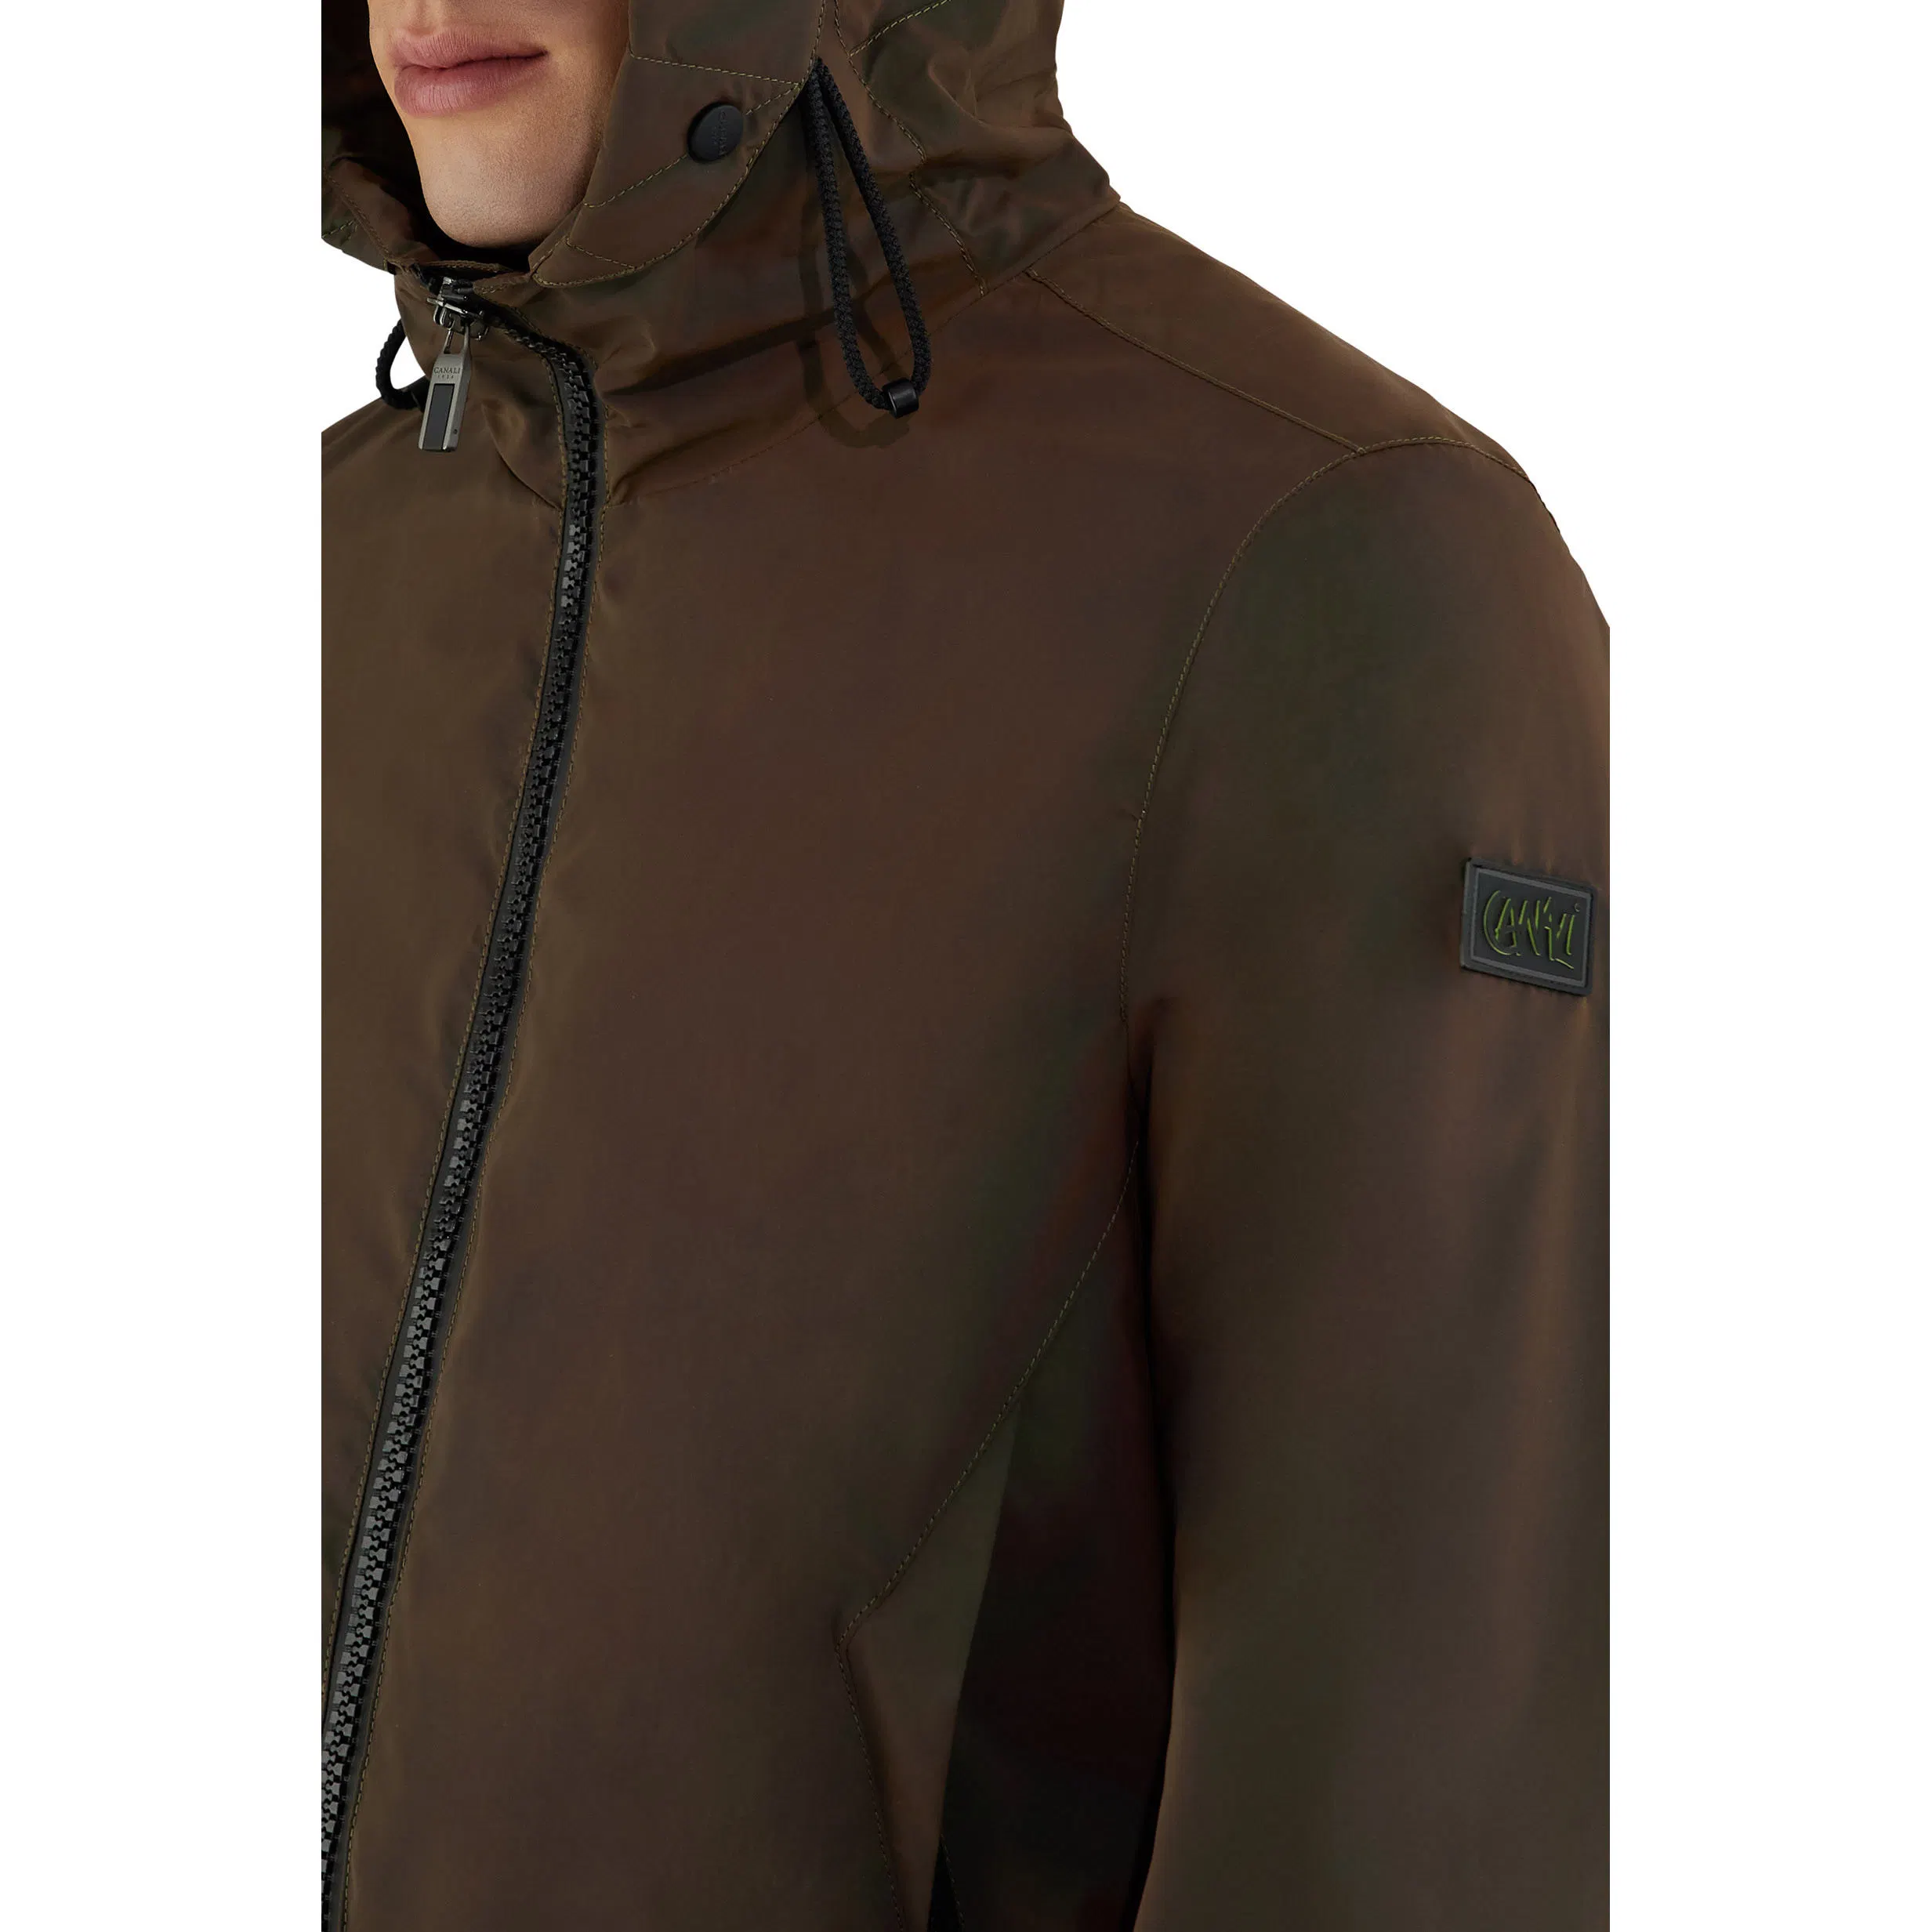 Wholesale/Supplier Fashion Gym Jacket d'entraînement tissé réfléchissant veste d'entraînement Homme